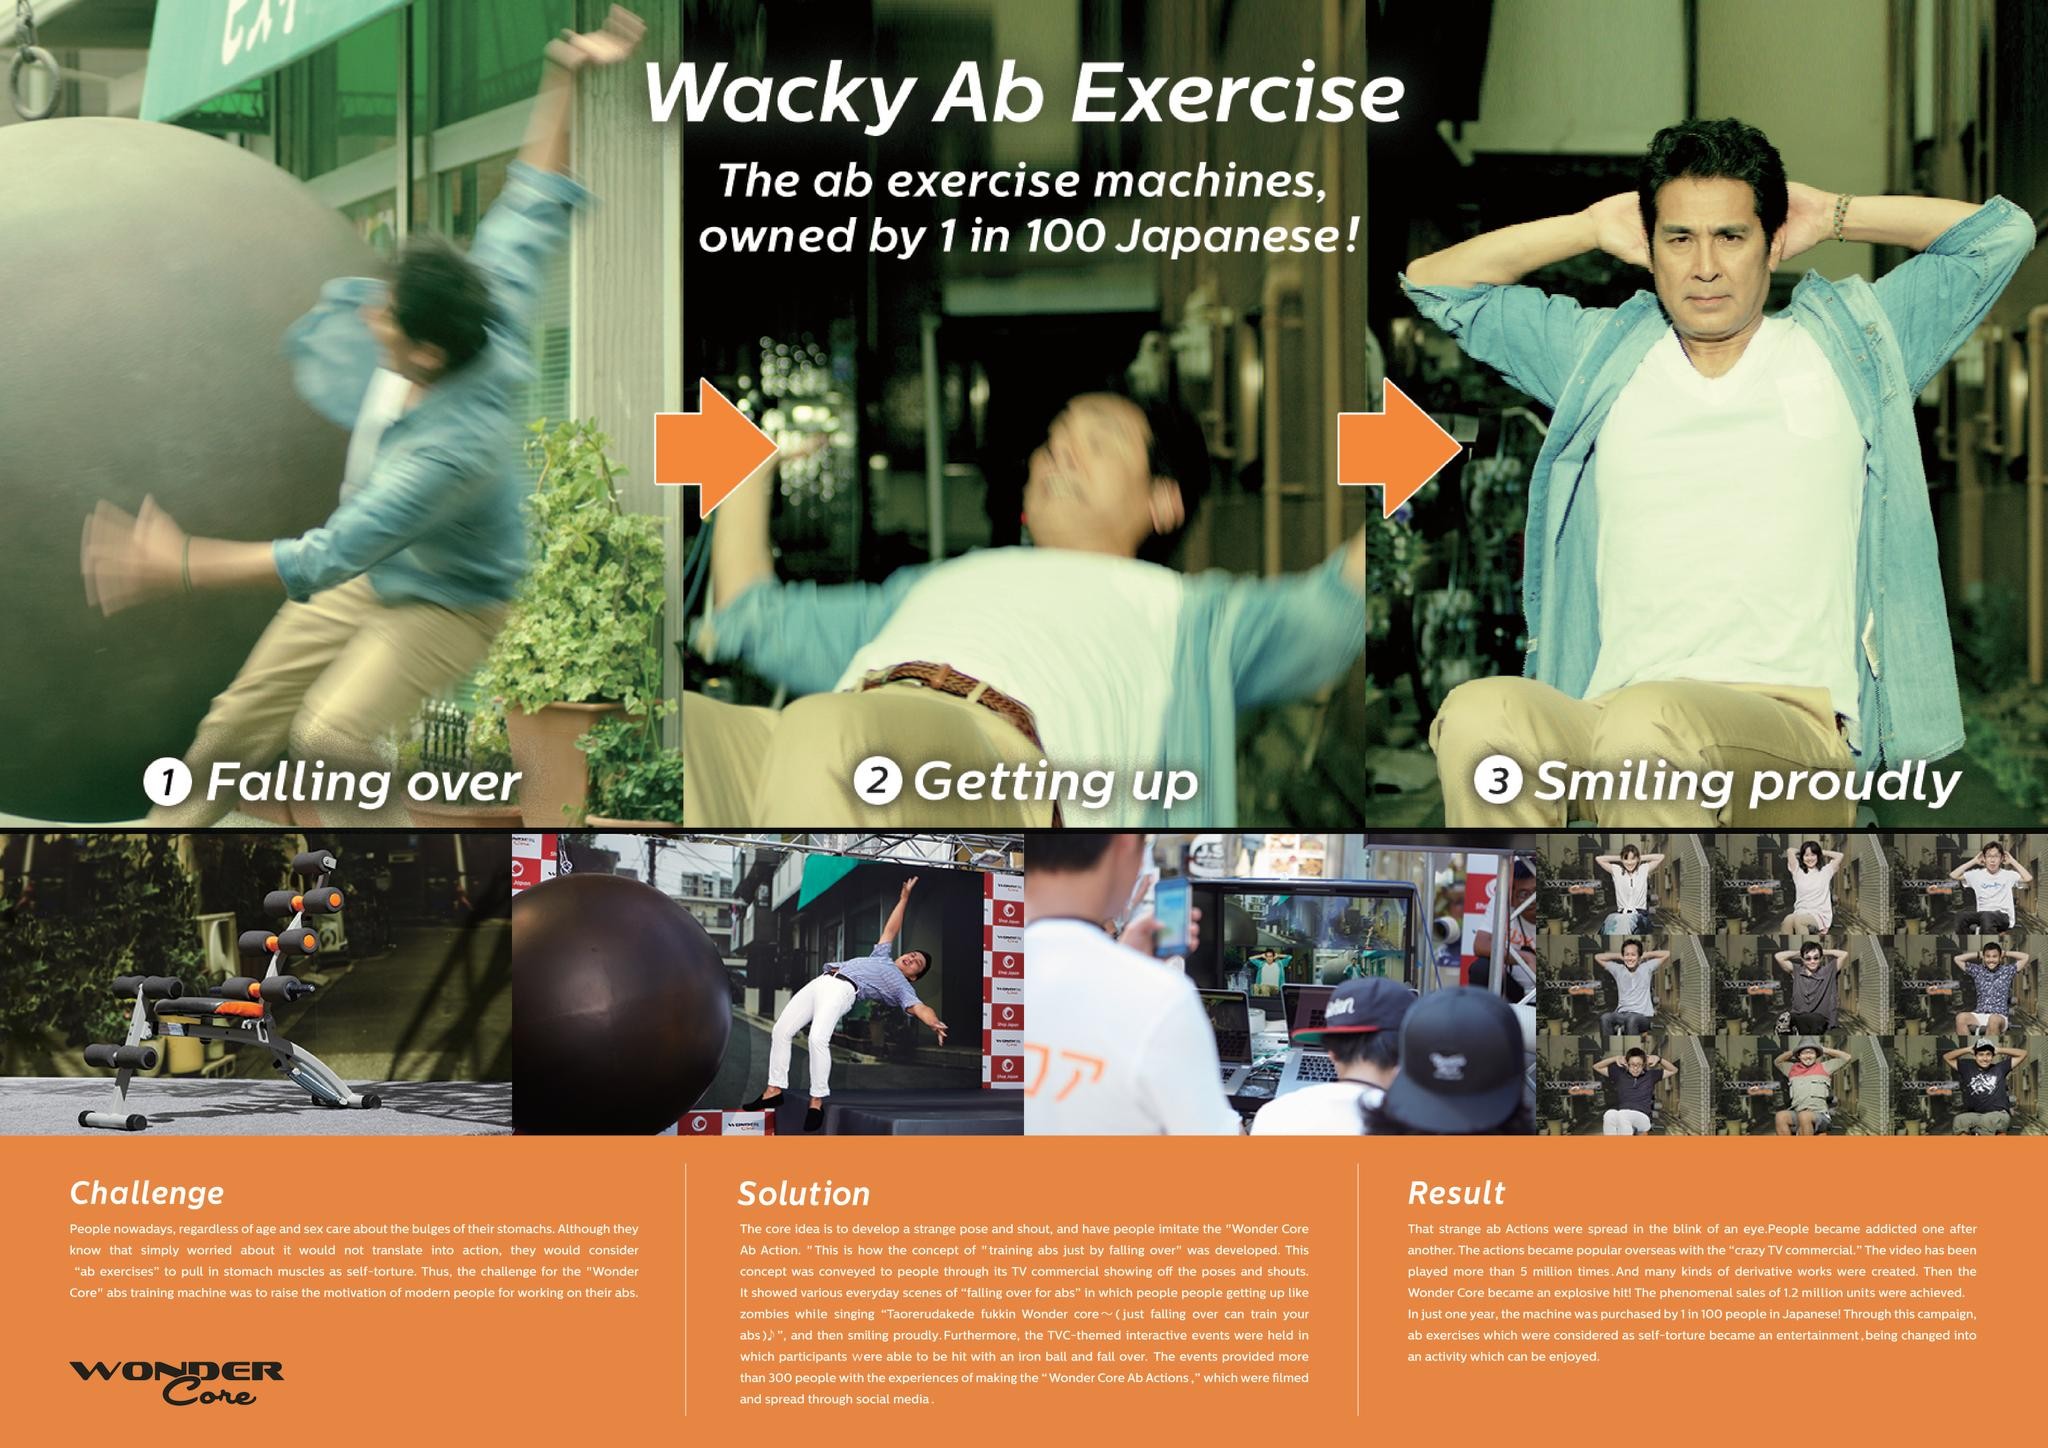 WACKY AB EXERCISE